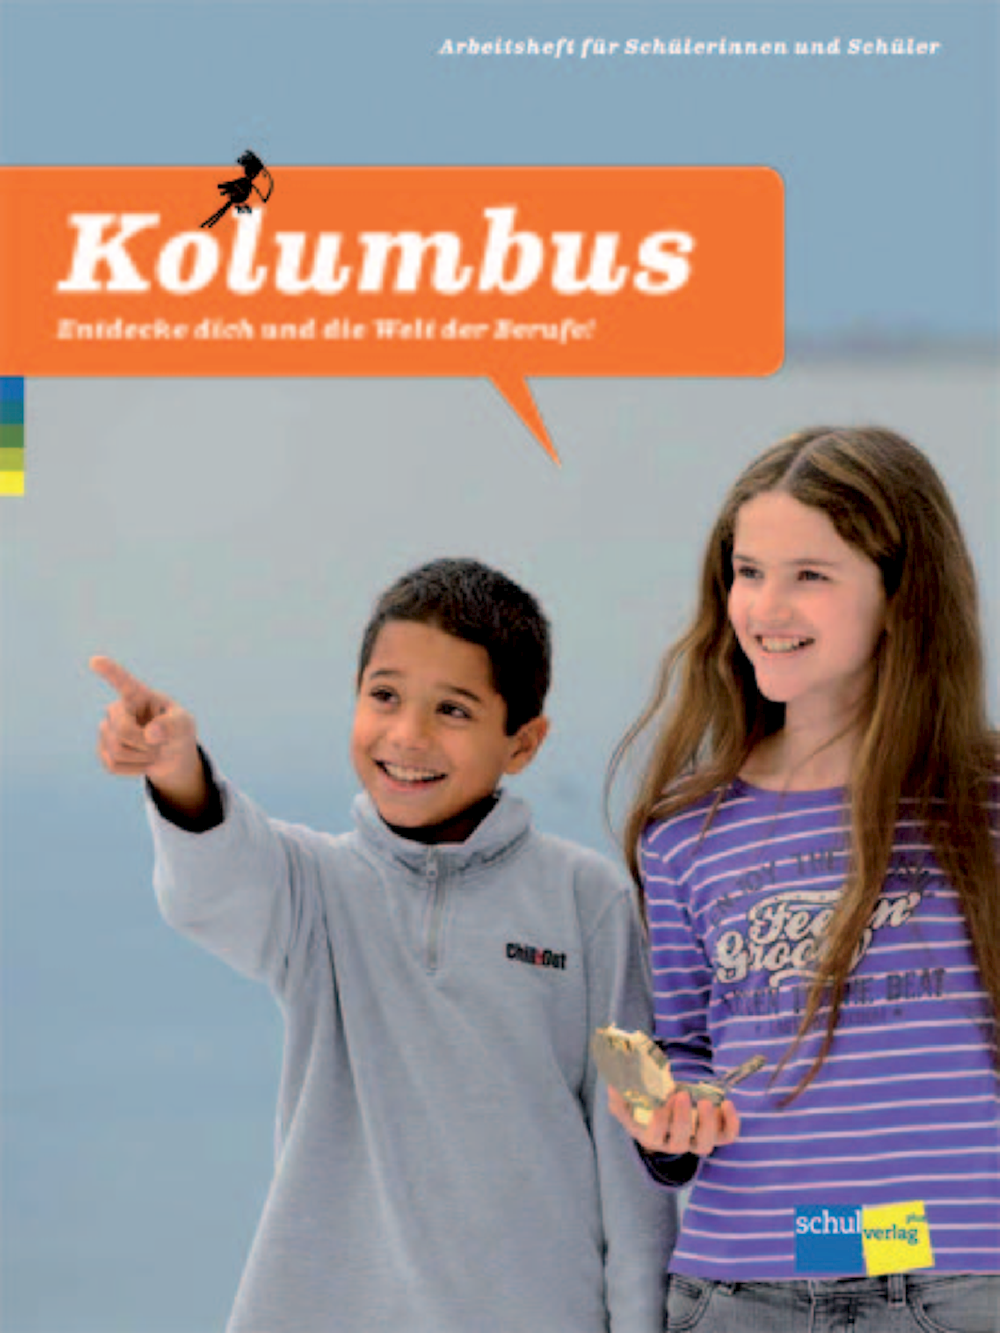 Kolumbus Arbeitsheft für Schülerinnen und Schüler